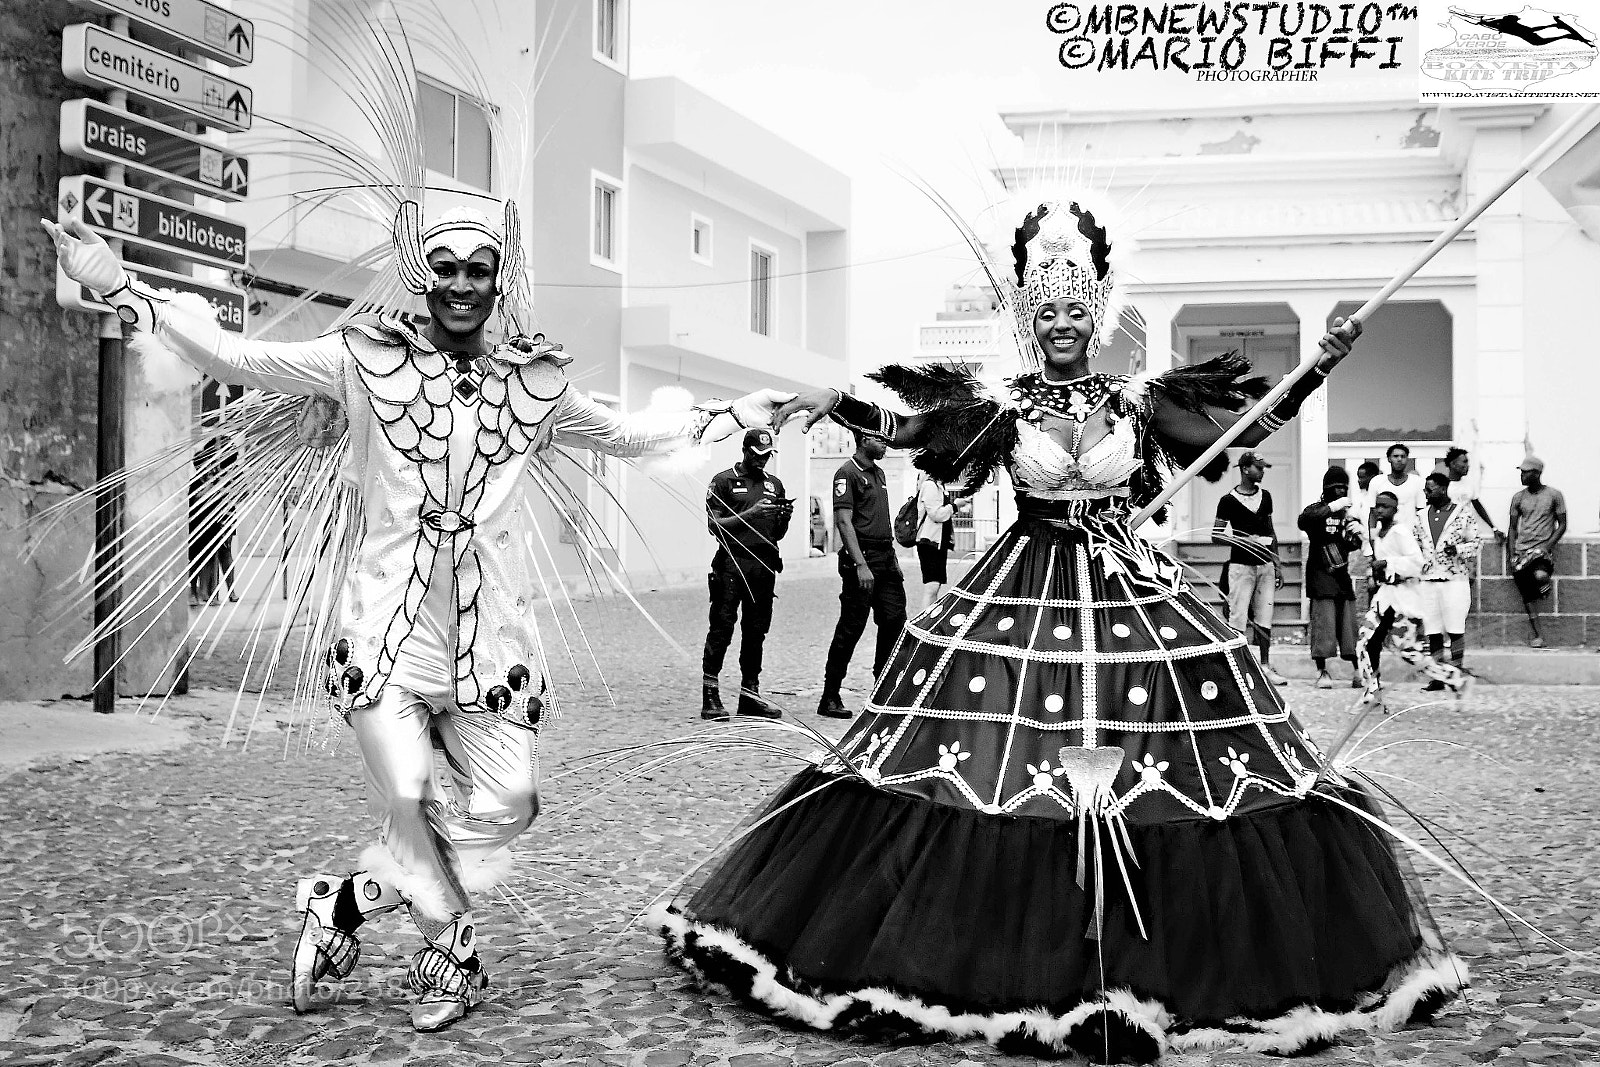 Canon EOS 70D sample photo. Carnaval bubista capo verde photography